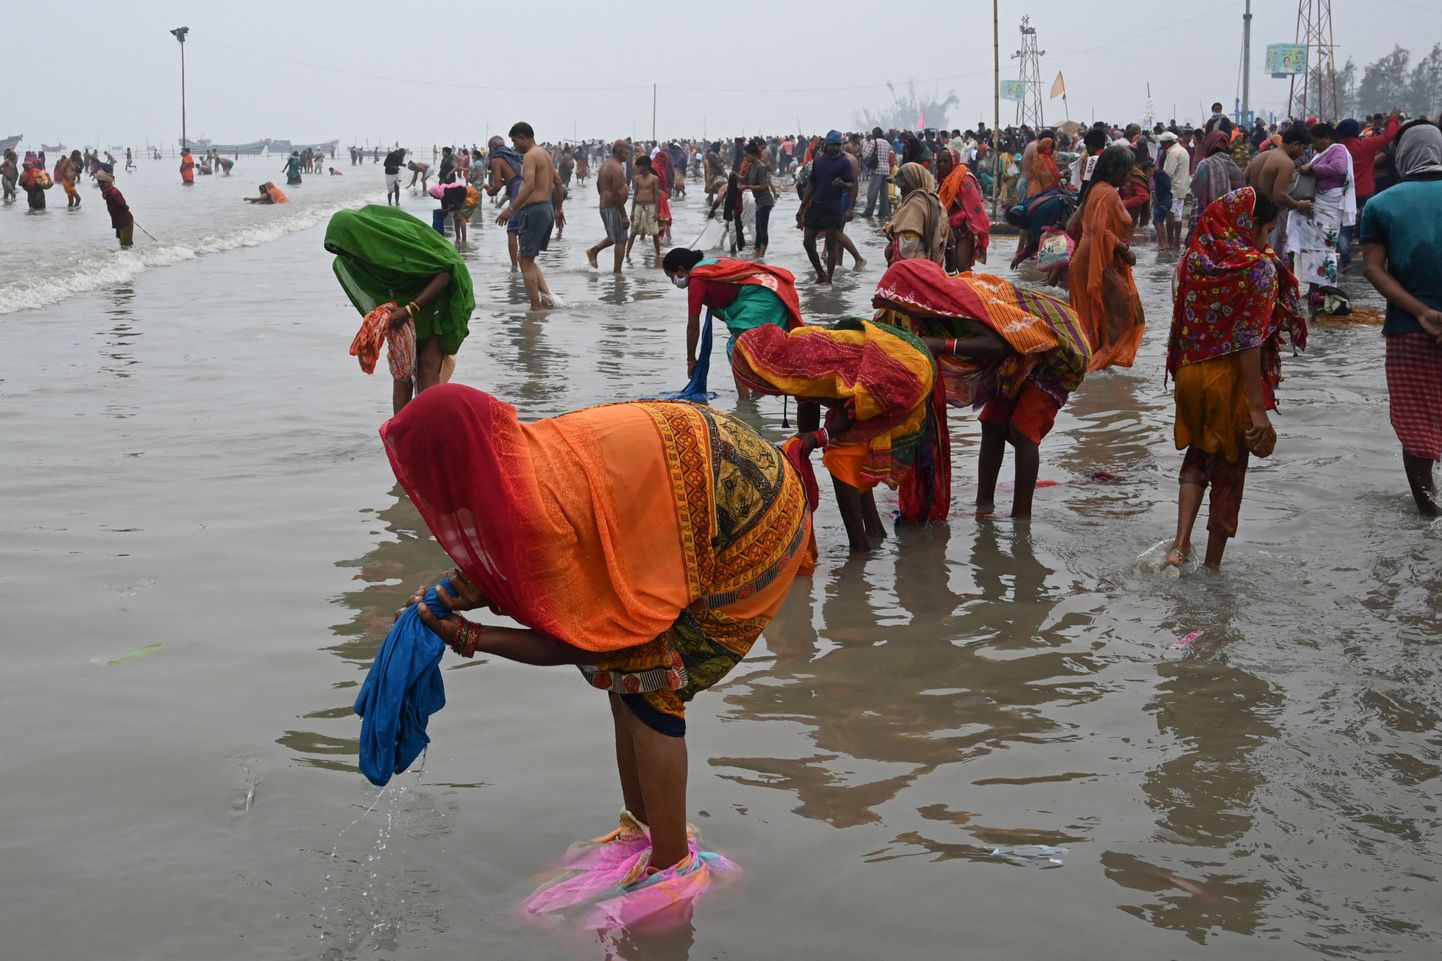 Hindu palverändurid gangasagar mela usupühal.